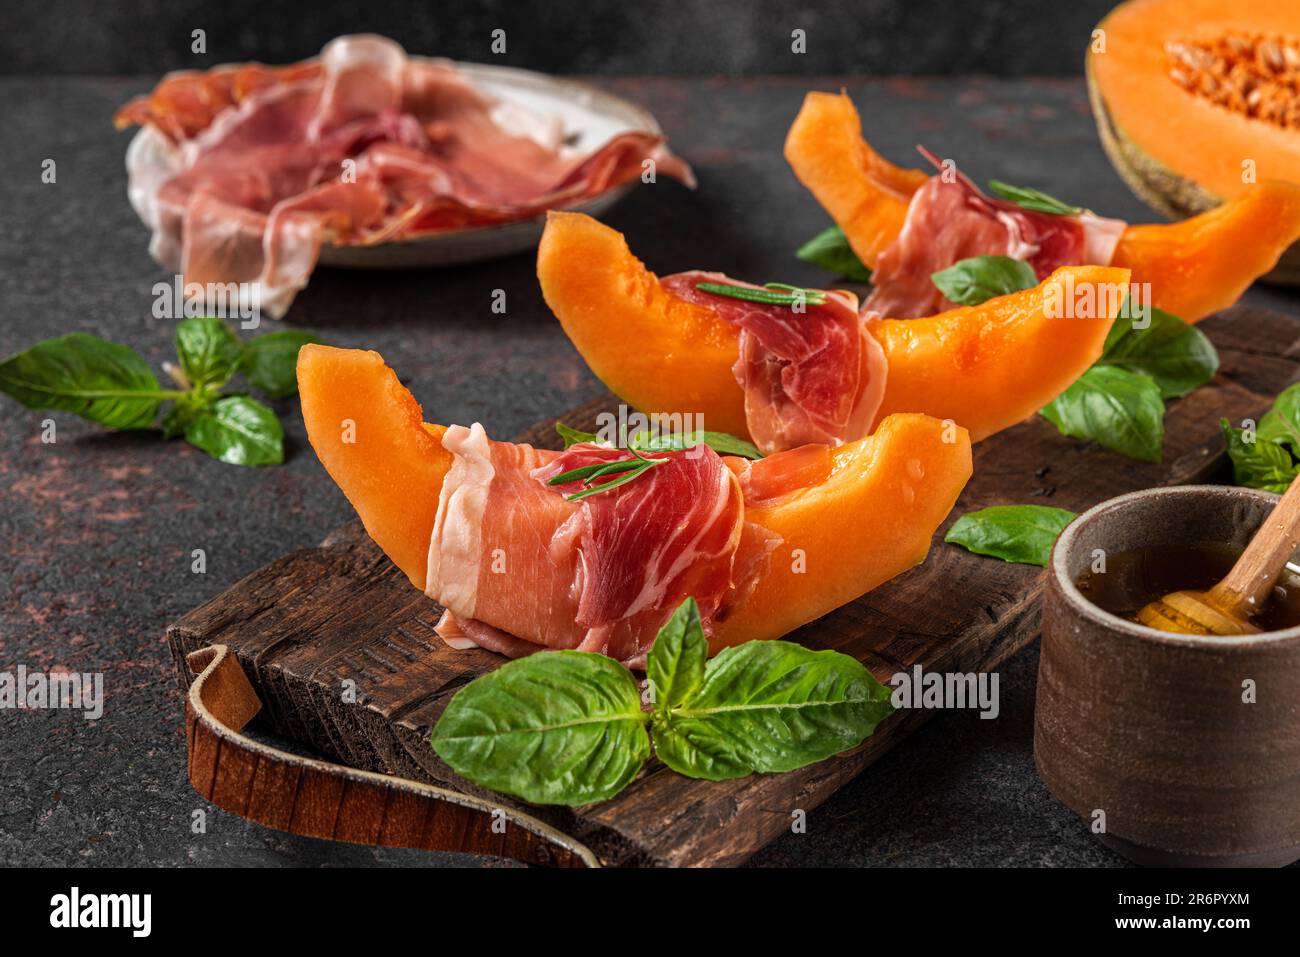 Prosciutto con fettine di melone cantaloupe, miele e basilico sul tagliere su fondo scuro. Antipasto italiano Foto Stock